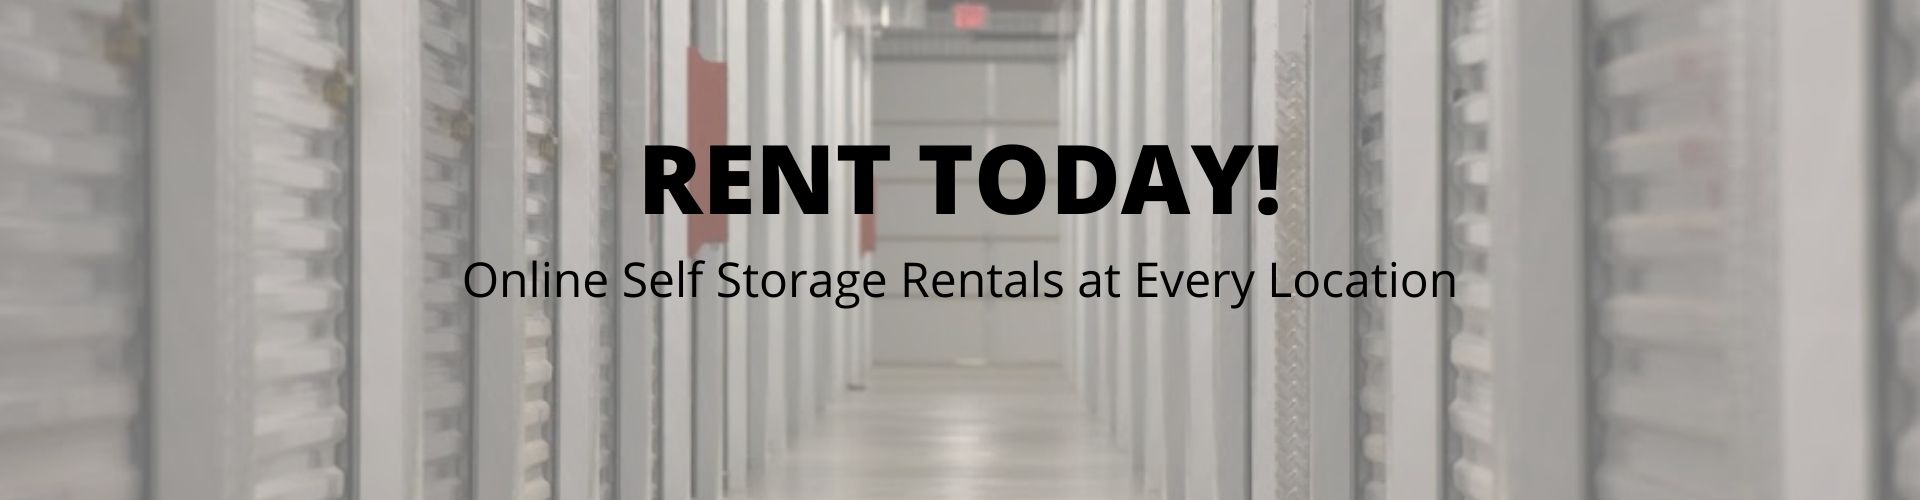 online storage rentals at Fairless Hills Self Storage